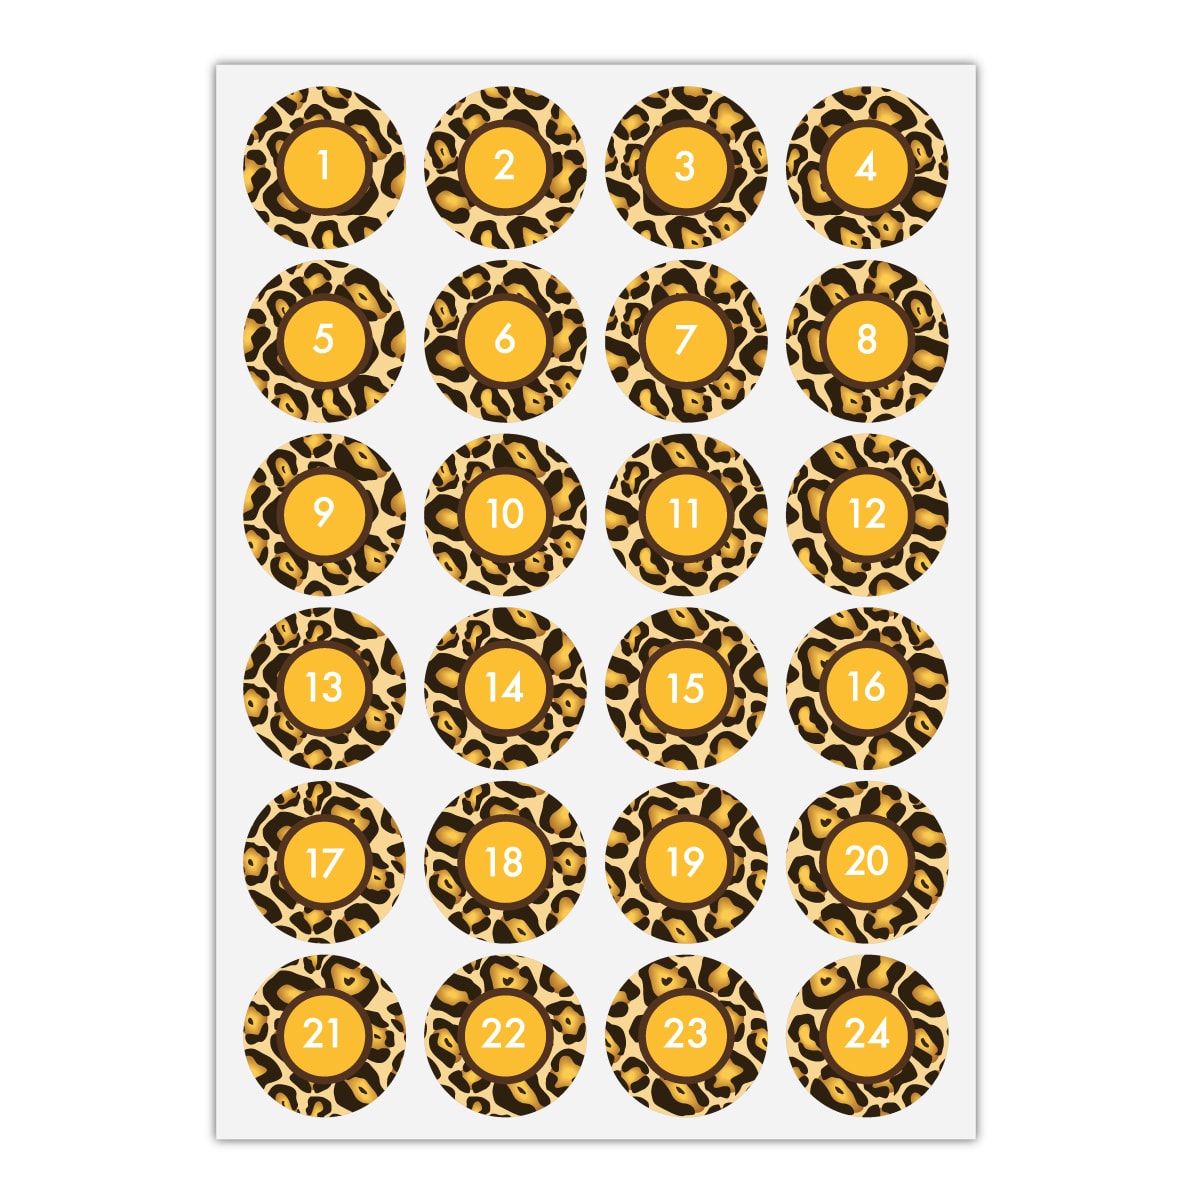 Kartenkaufrausch Sticker in gelb: 24 elegante Advents Aufkleber